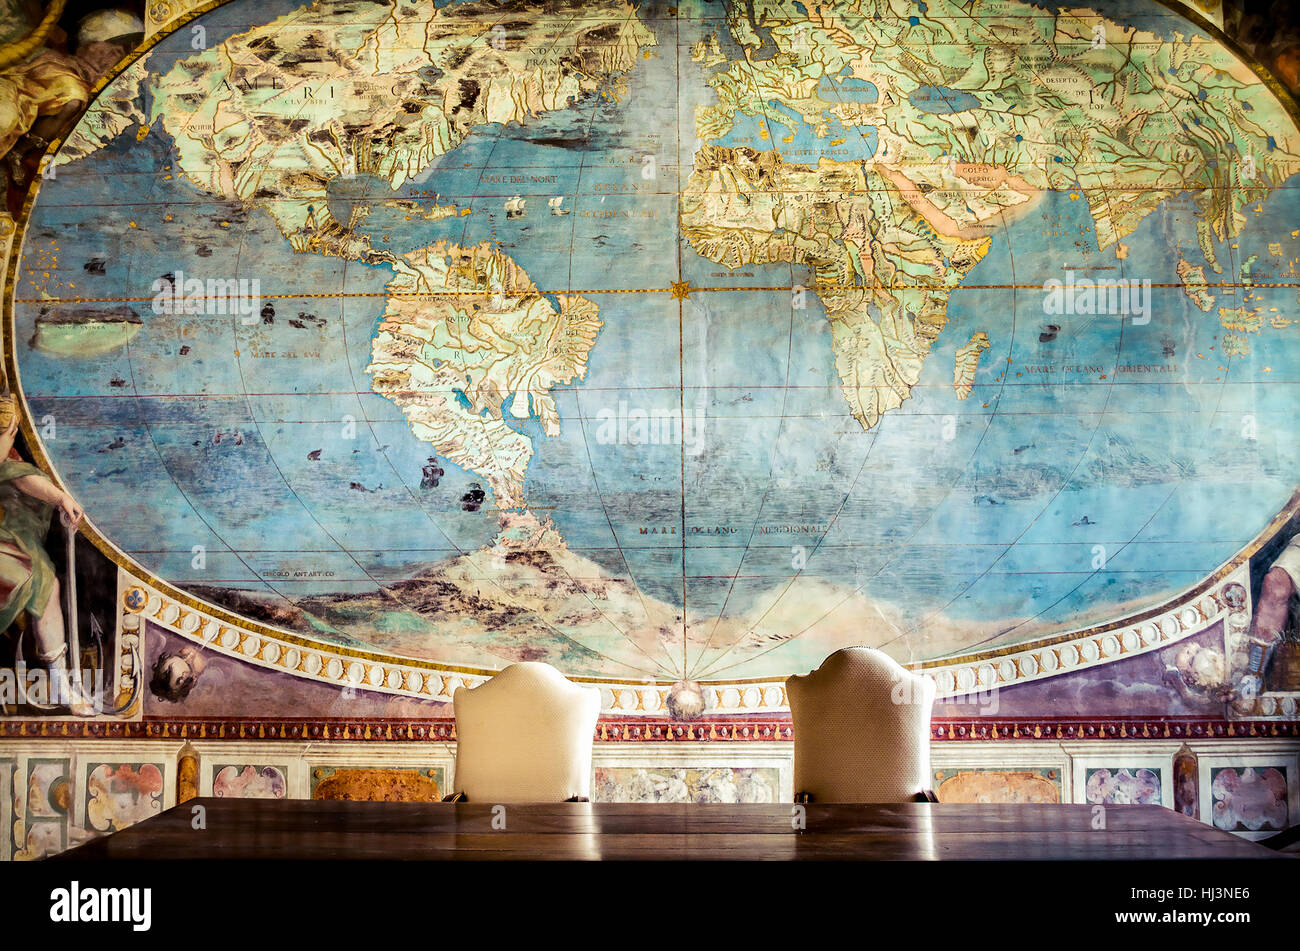 La franc-maçonnerie contrôlant la conspiration mondiale Caprarola une grande table avec deux chaise vide et une vieille carte du monde sur le mur Banque D'Images